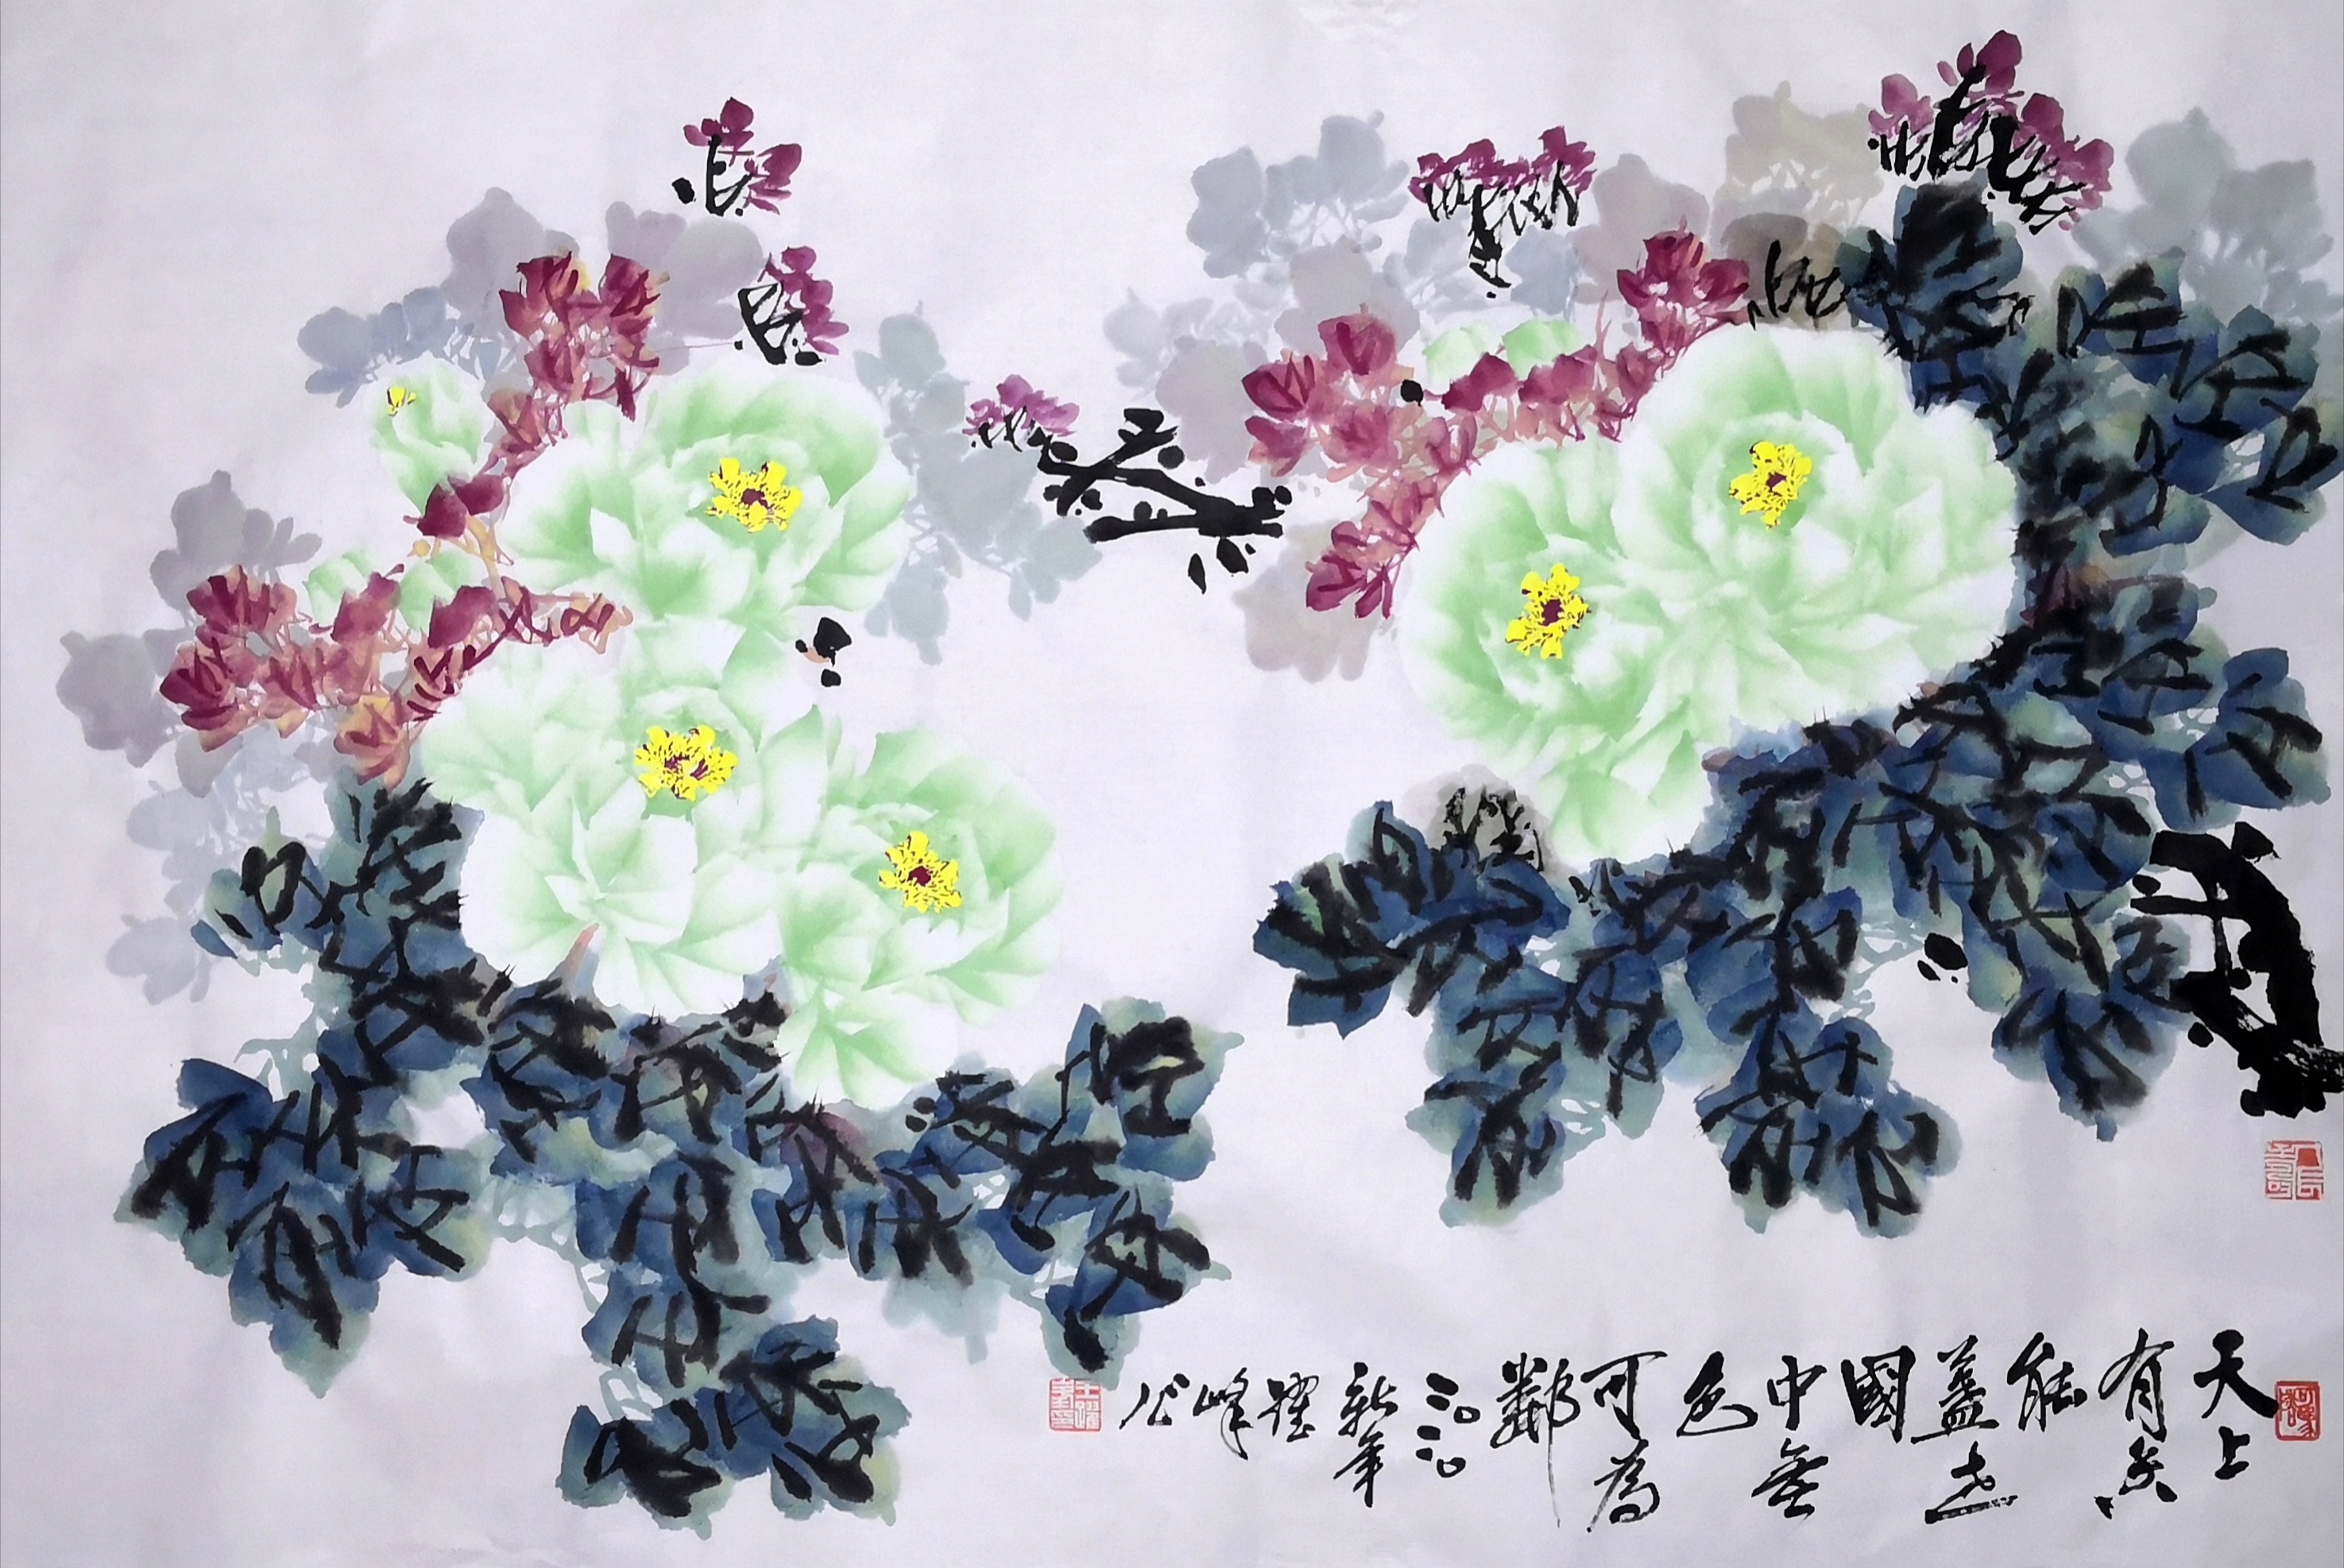 凌雪牡丹工笔国画 - 牡丹画 - 99字画网